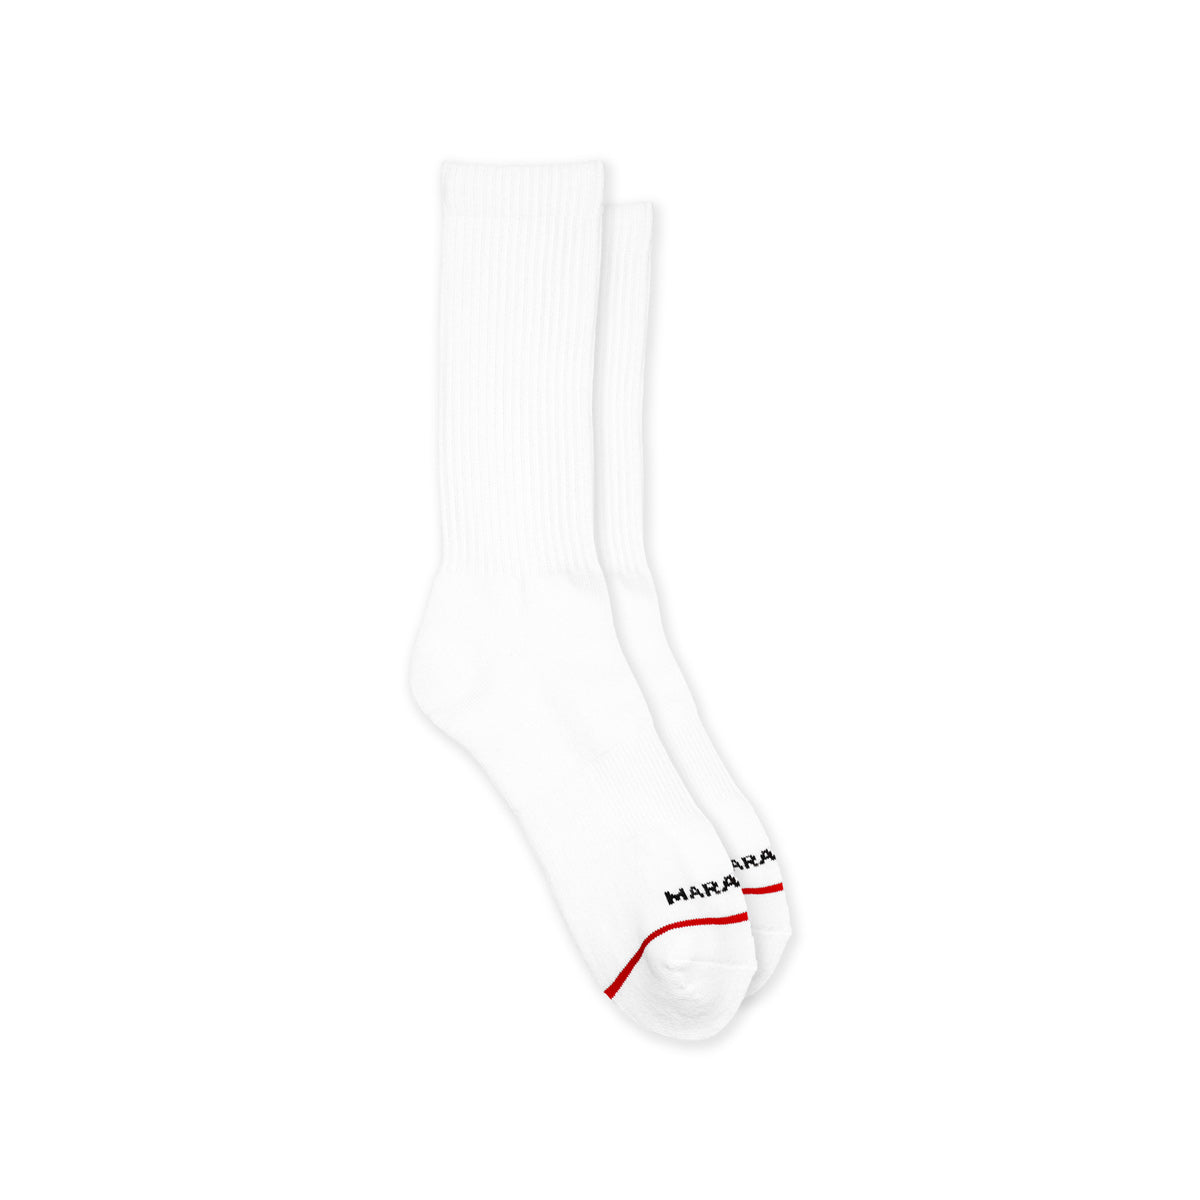 The Marathon Socks - Single Pair Marathon Wordmark